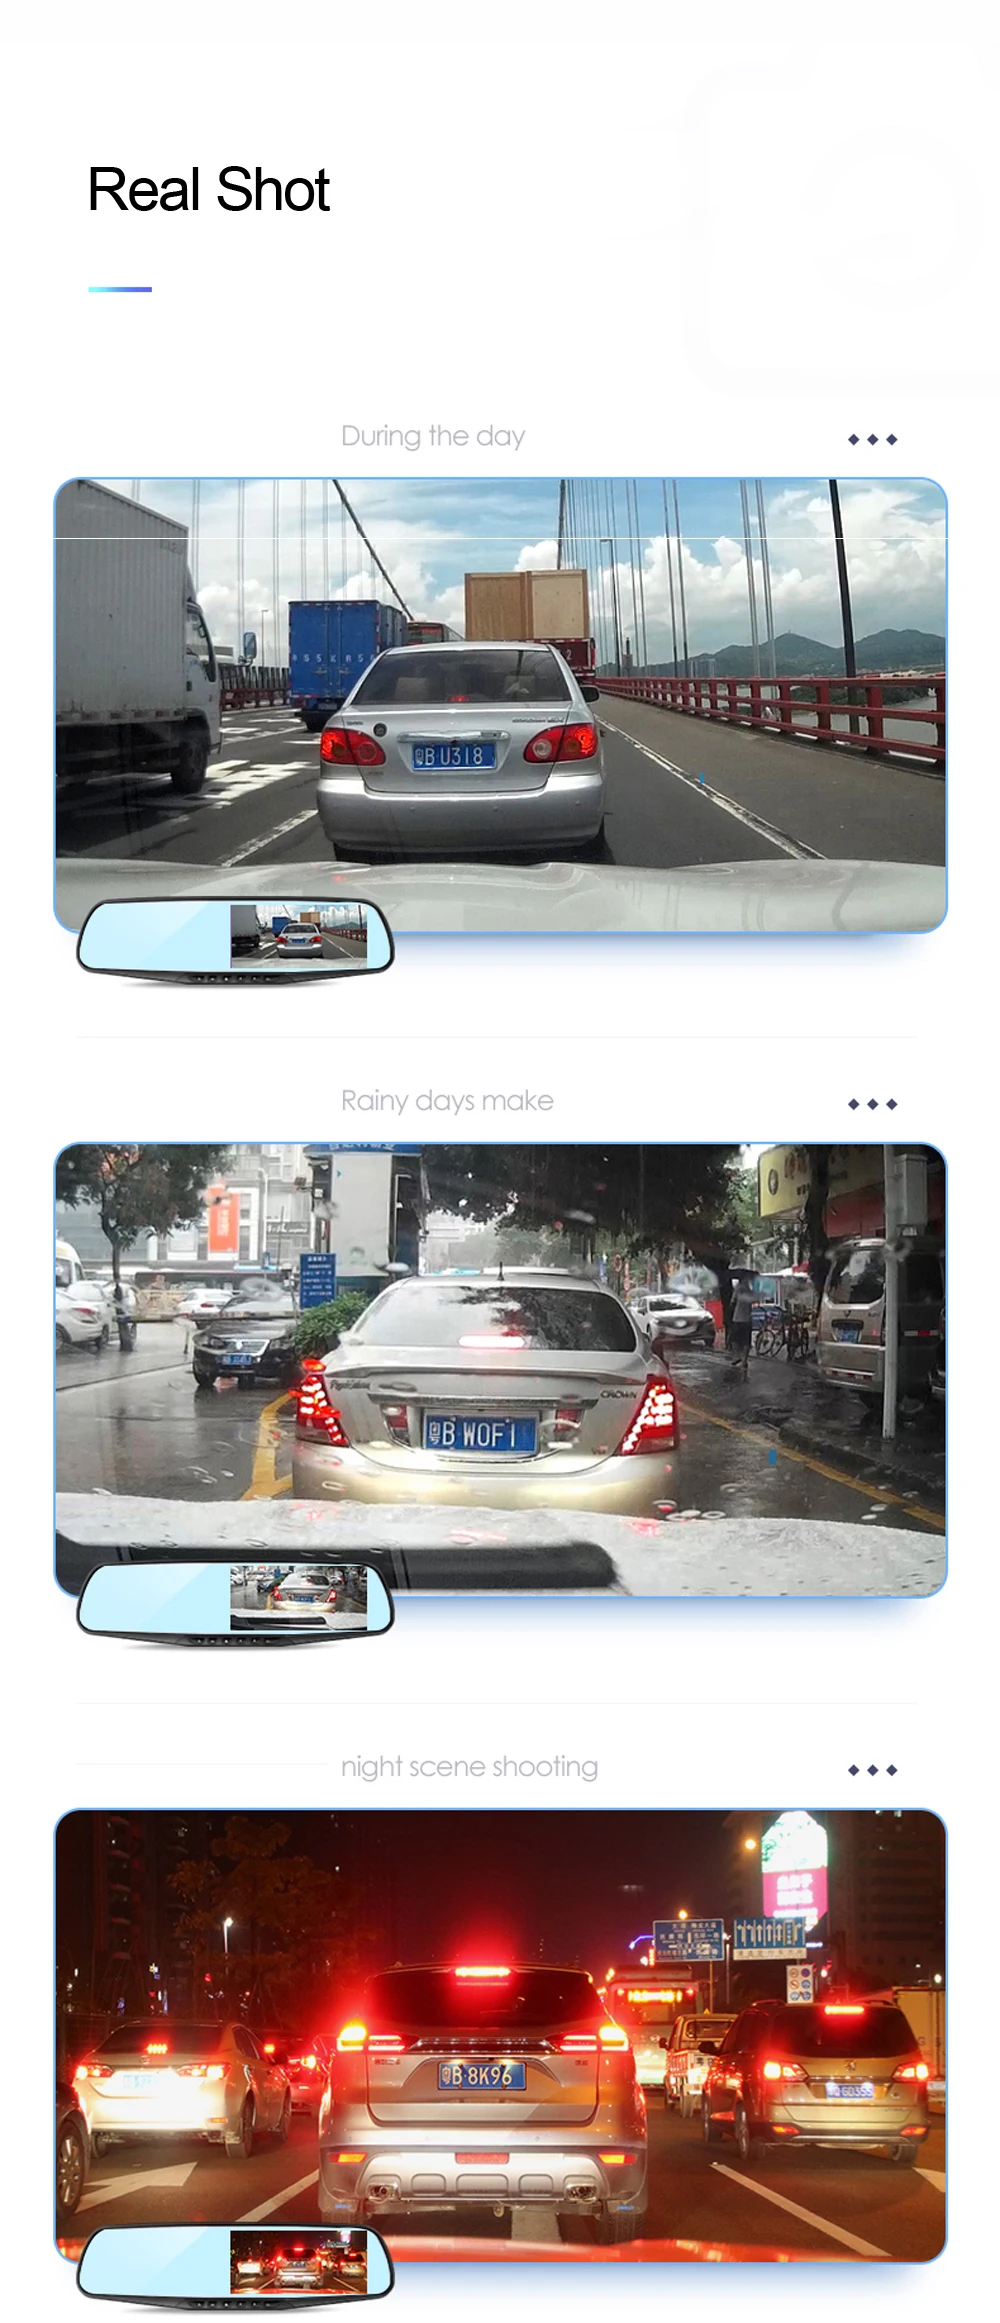 ADDKEY Full HD 1080P voiture Dvr caméra Auto 4.3 pouces rétroviseur tableau de bord enregistreur vidéo numérique double lentille caméscope d'enregistrement